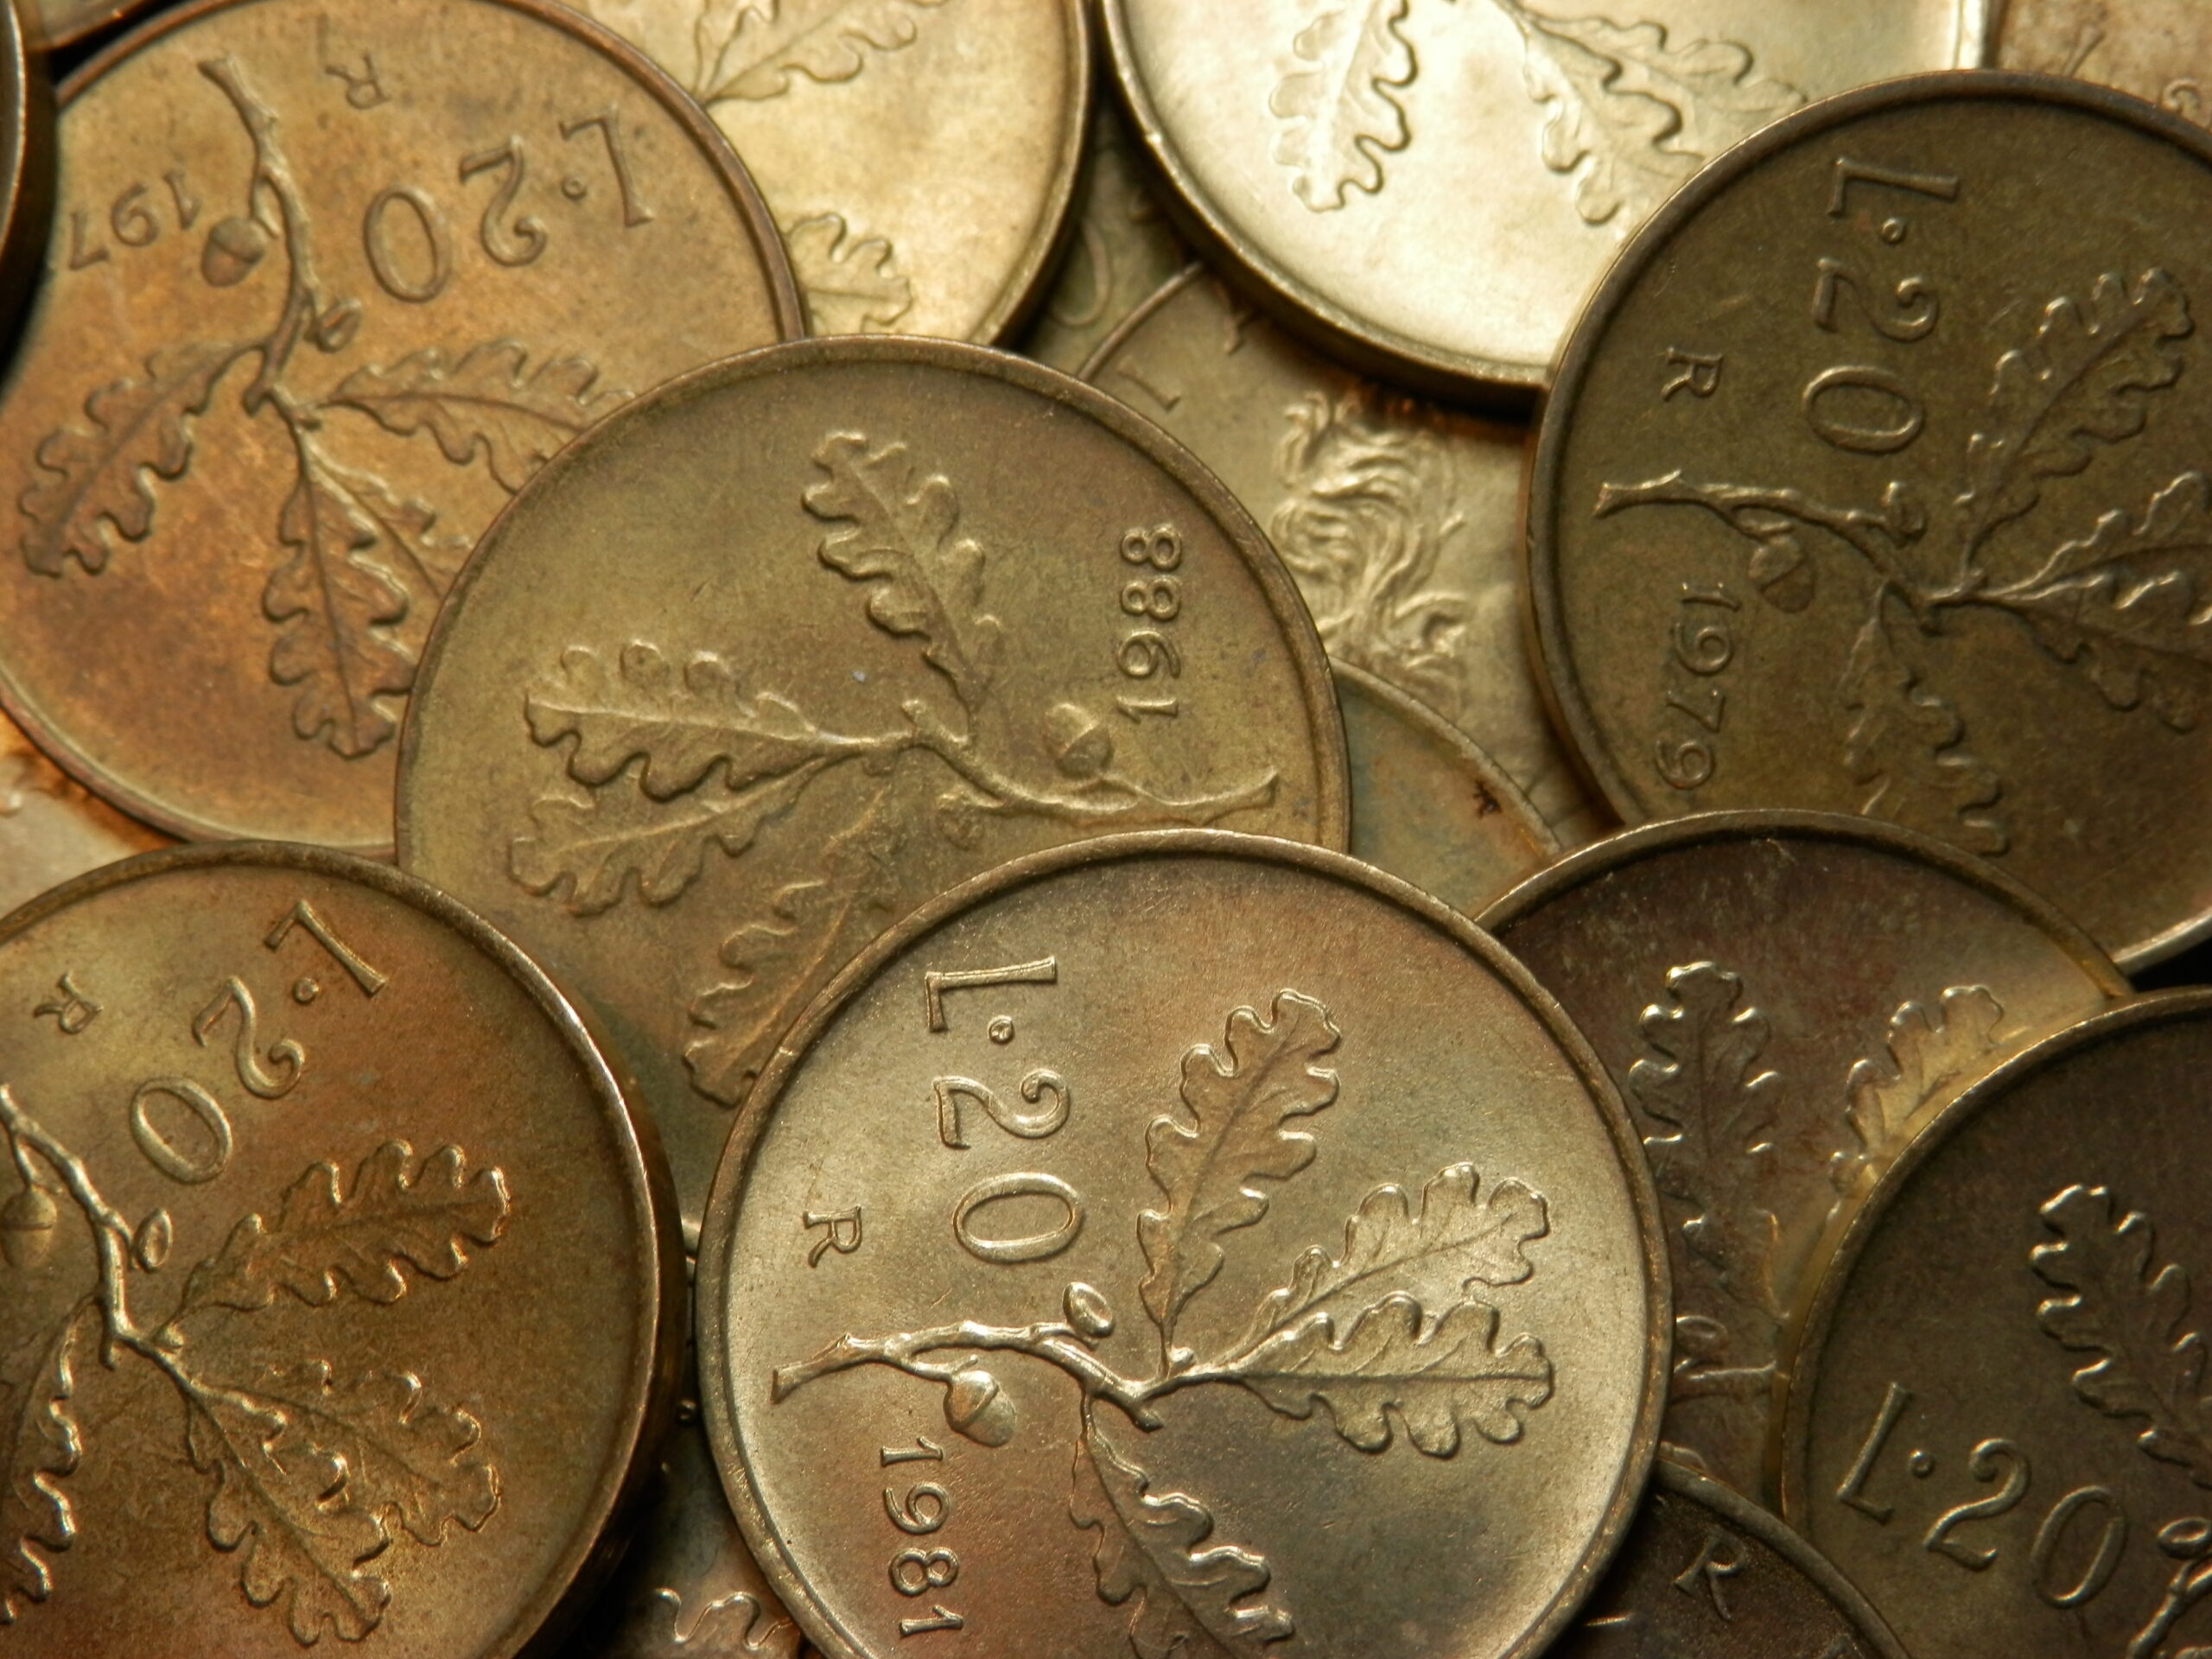 Monete rare da 20 lire: tra queste ce n'è una che vale più di 10.000 euro